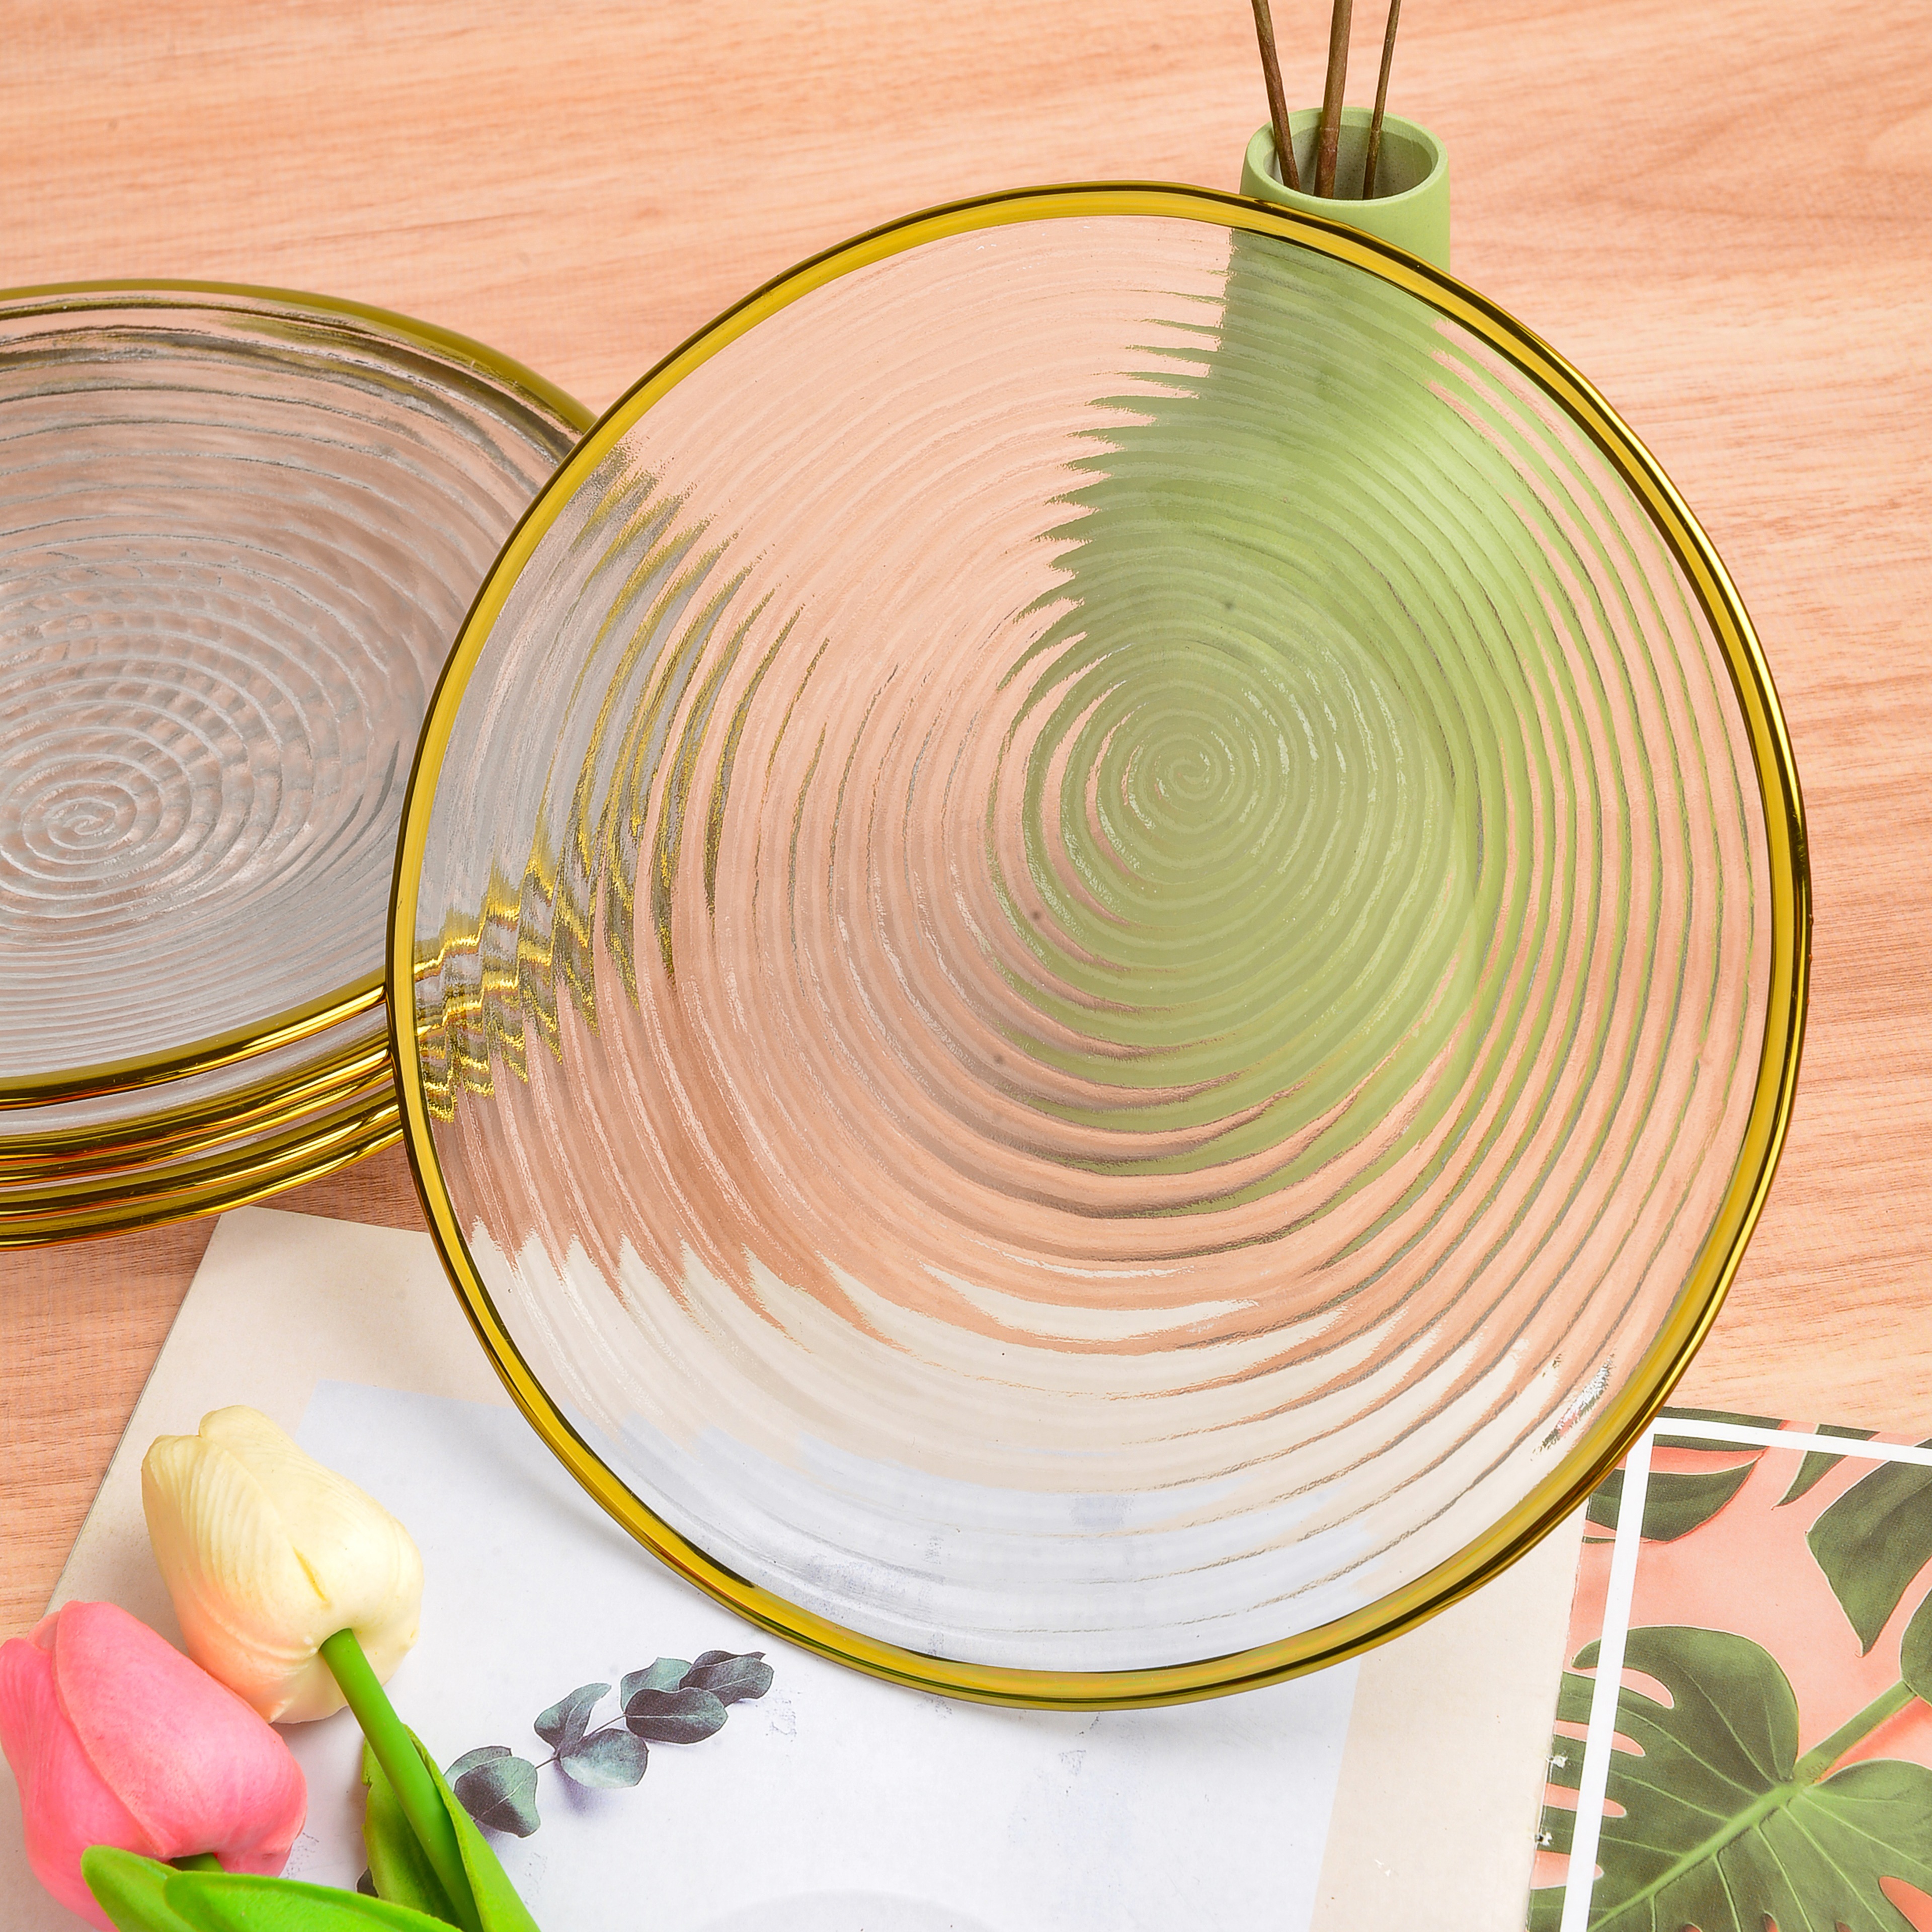 水晶玻璃水果盘客厅家用创意花语网红金边螺旋纹水果篮北欧风格糖果零食碟大号